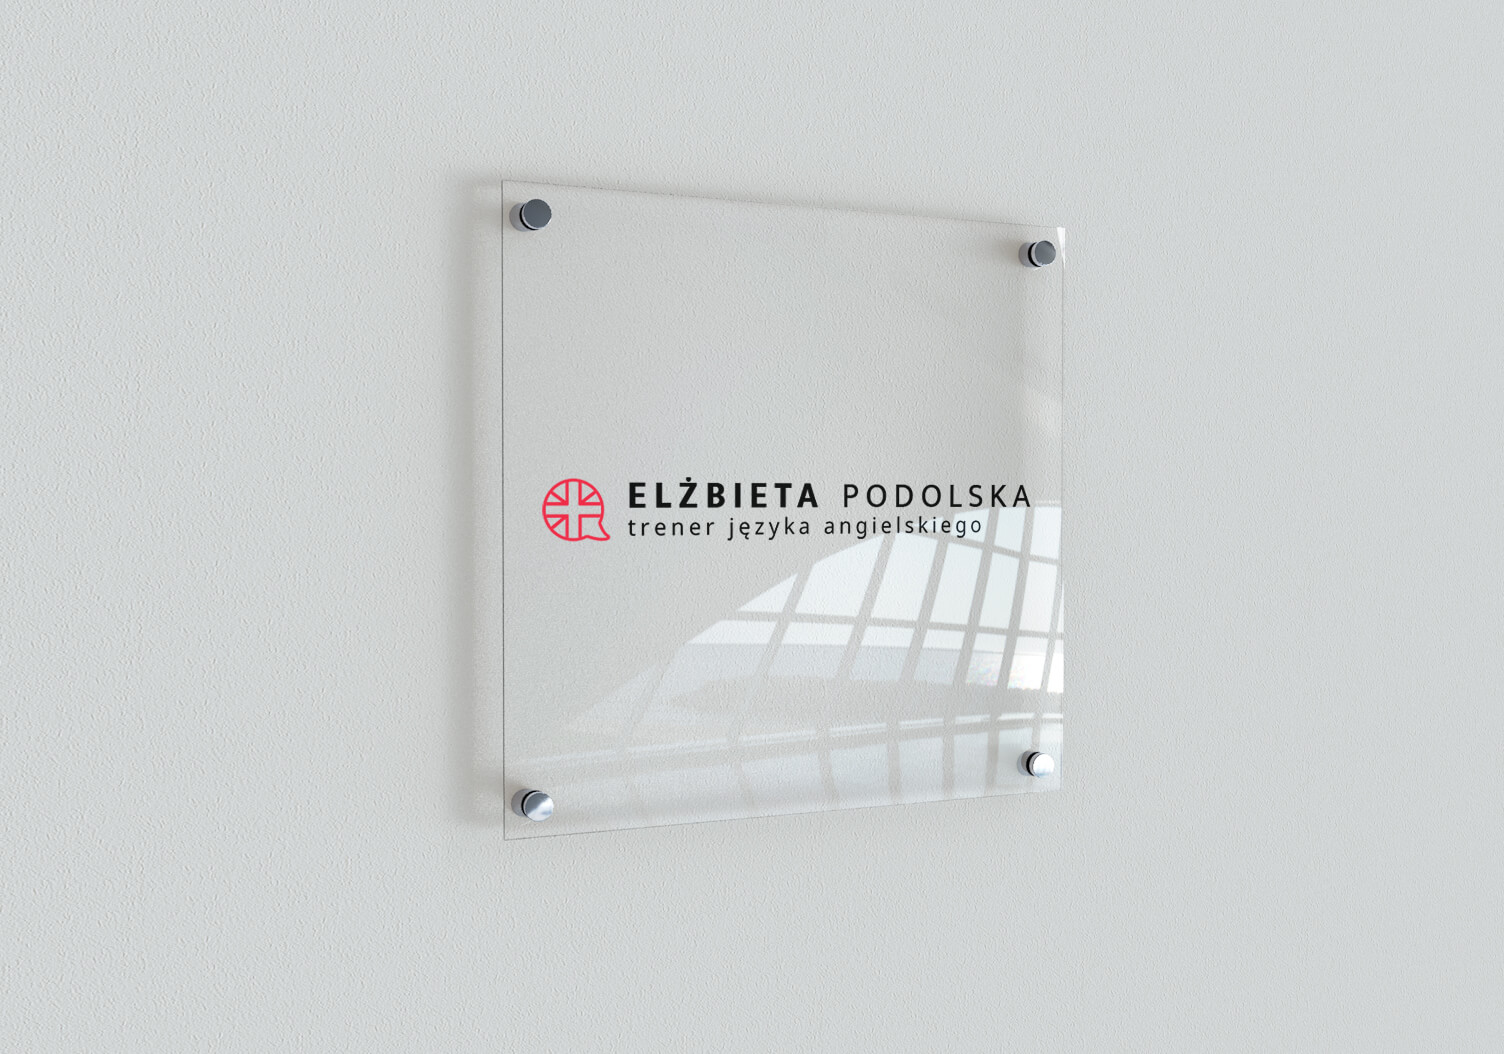 Elżbieta Podolska - projekt tabliczki ściennej z nowym logo